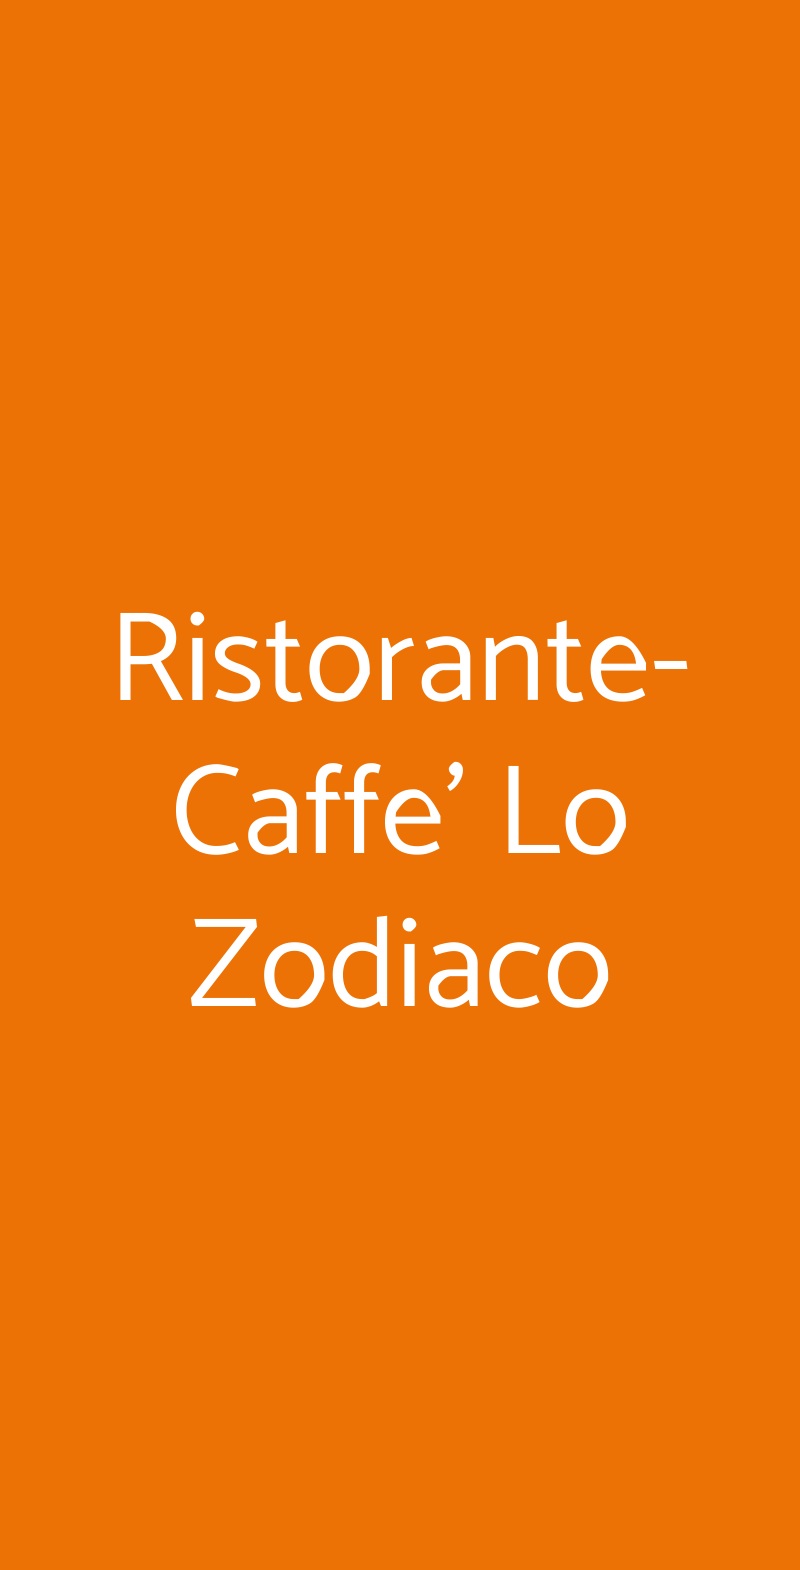 Ristorante-Caffe' Lo Zodiaco Roma menù 1 pagina